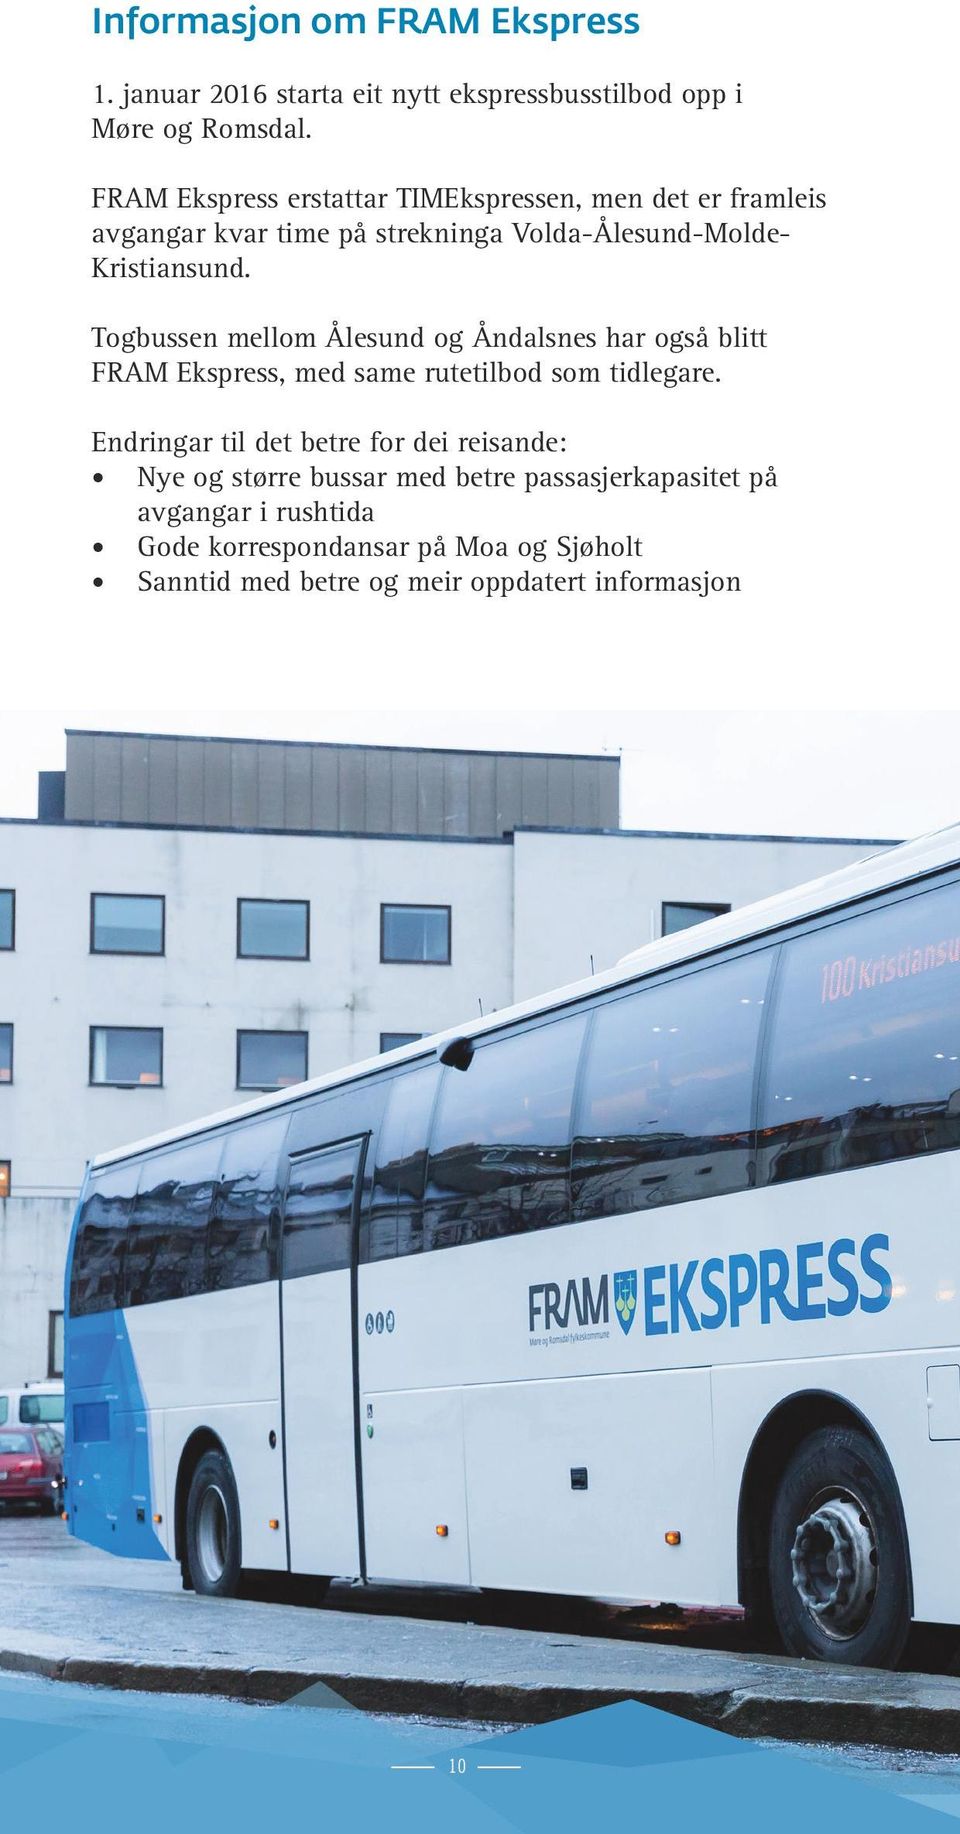 Togbussen mellom Ålesund og Åndalsnes har også blitt FRAM Ekspress, med same rutetilbod som tidlegare.